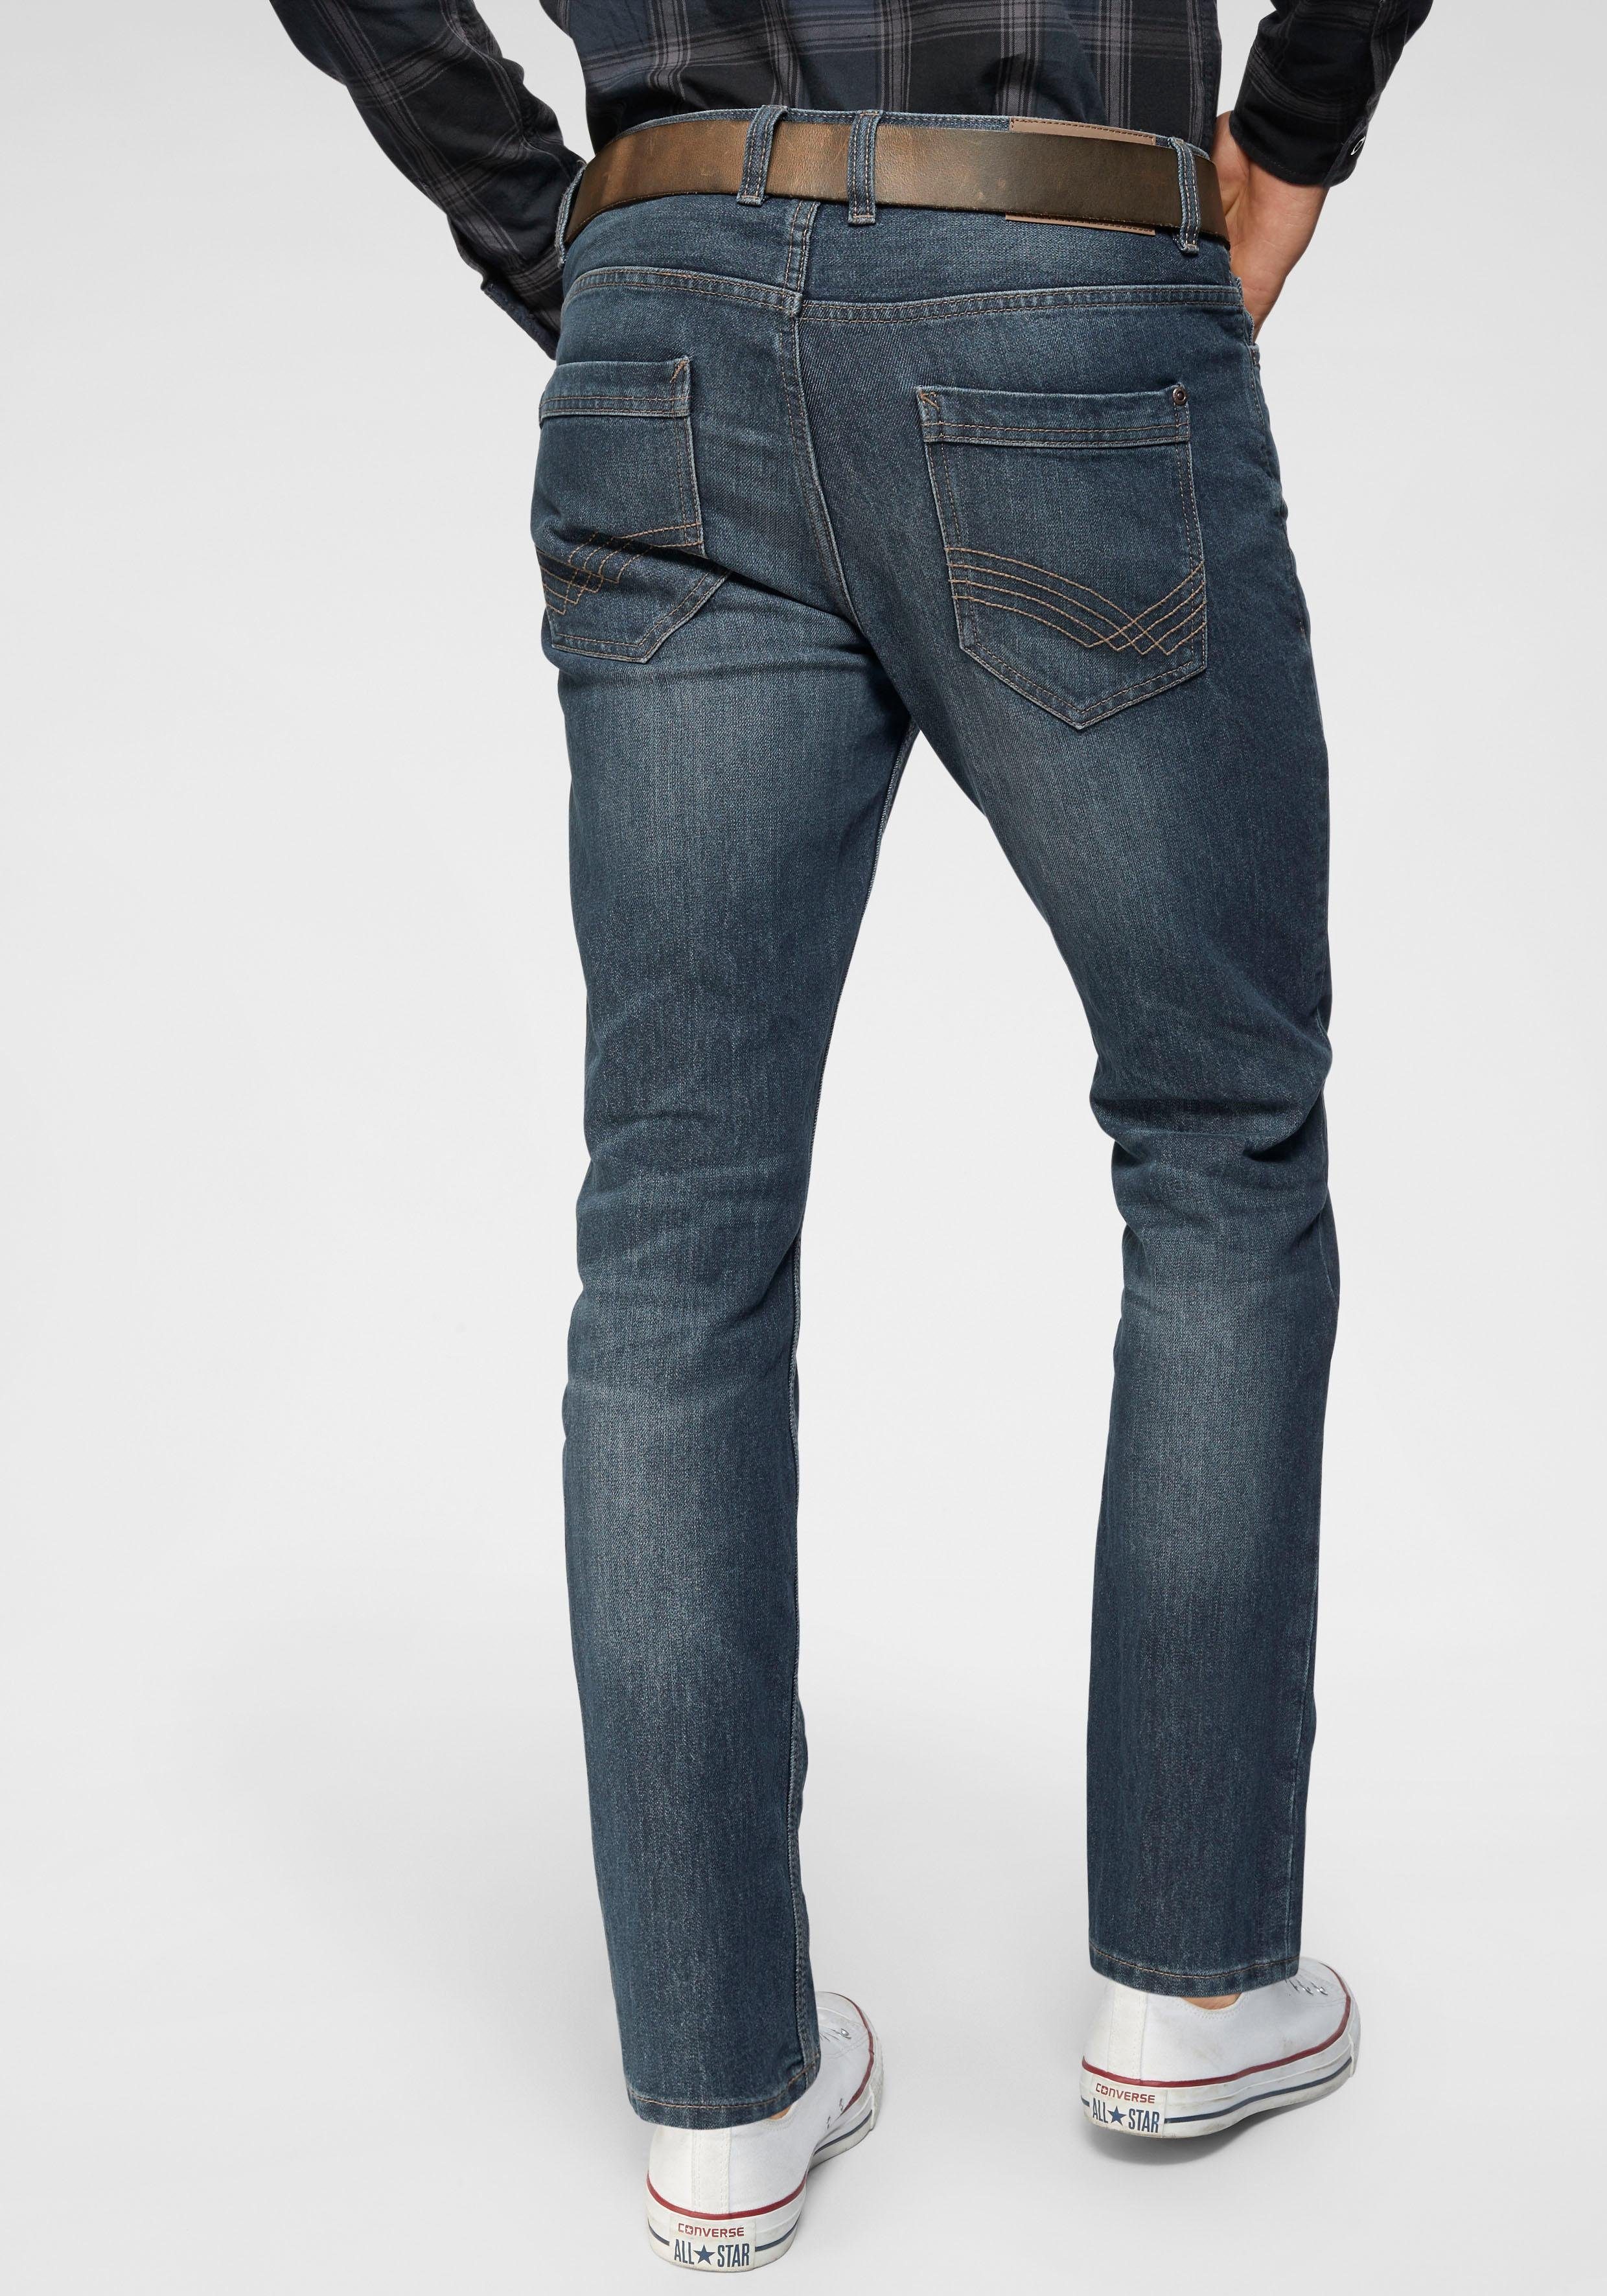 TOM TAILOR 5-pocket jeans Marvin